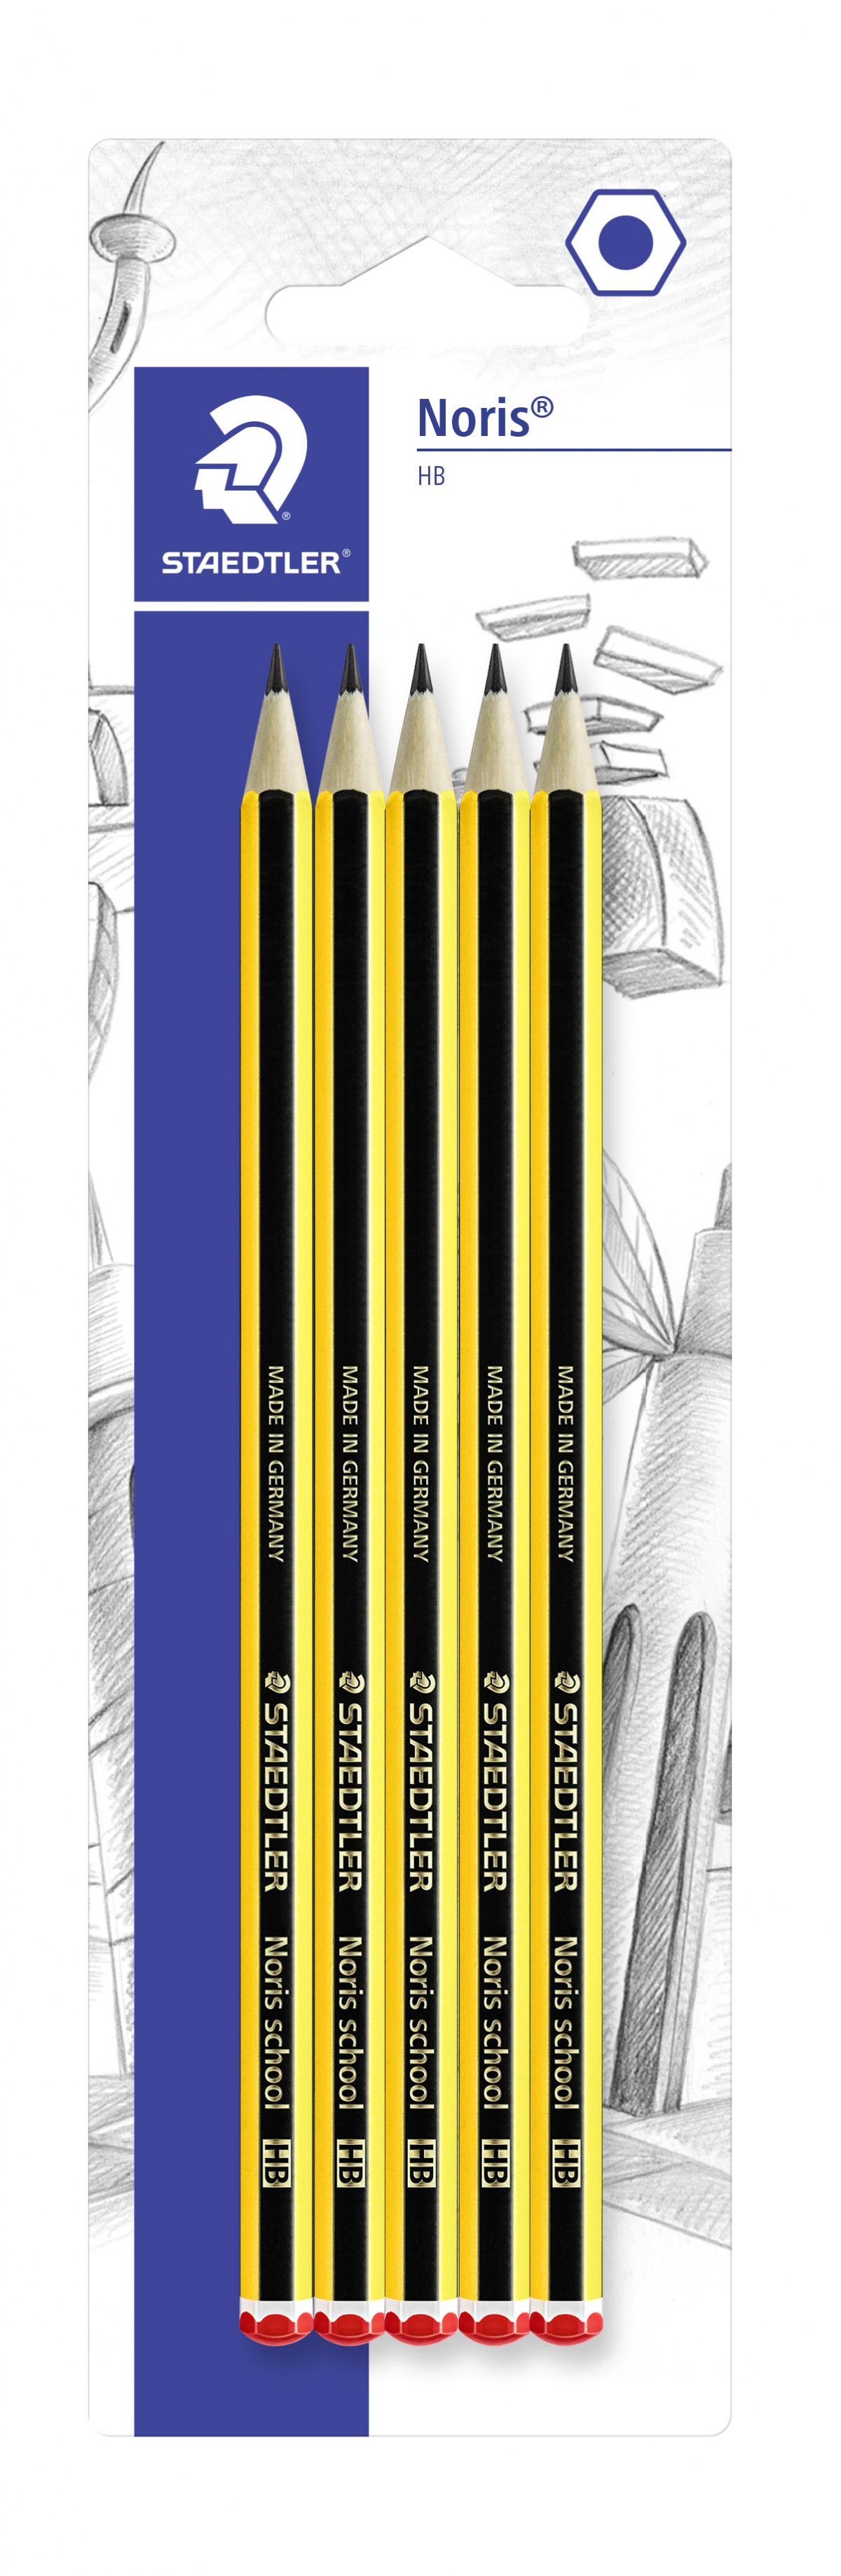 Staedtler Noris HB Pencils for Office, School Art Drawing & More Break  Resistant Pack of 1-100 Pencils -  UK